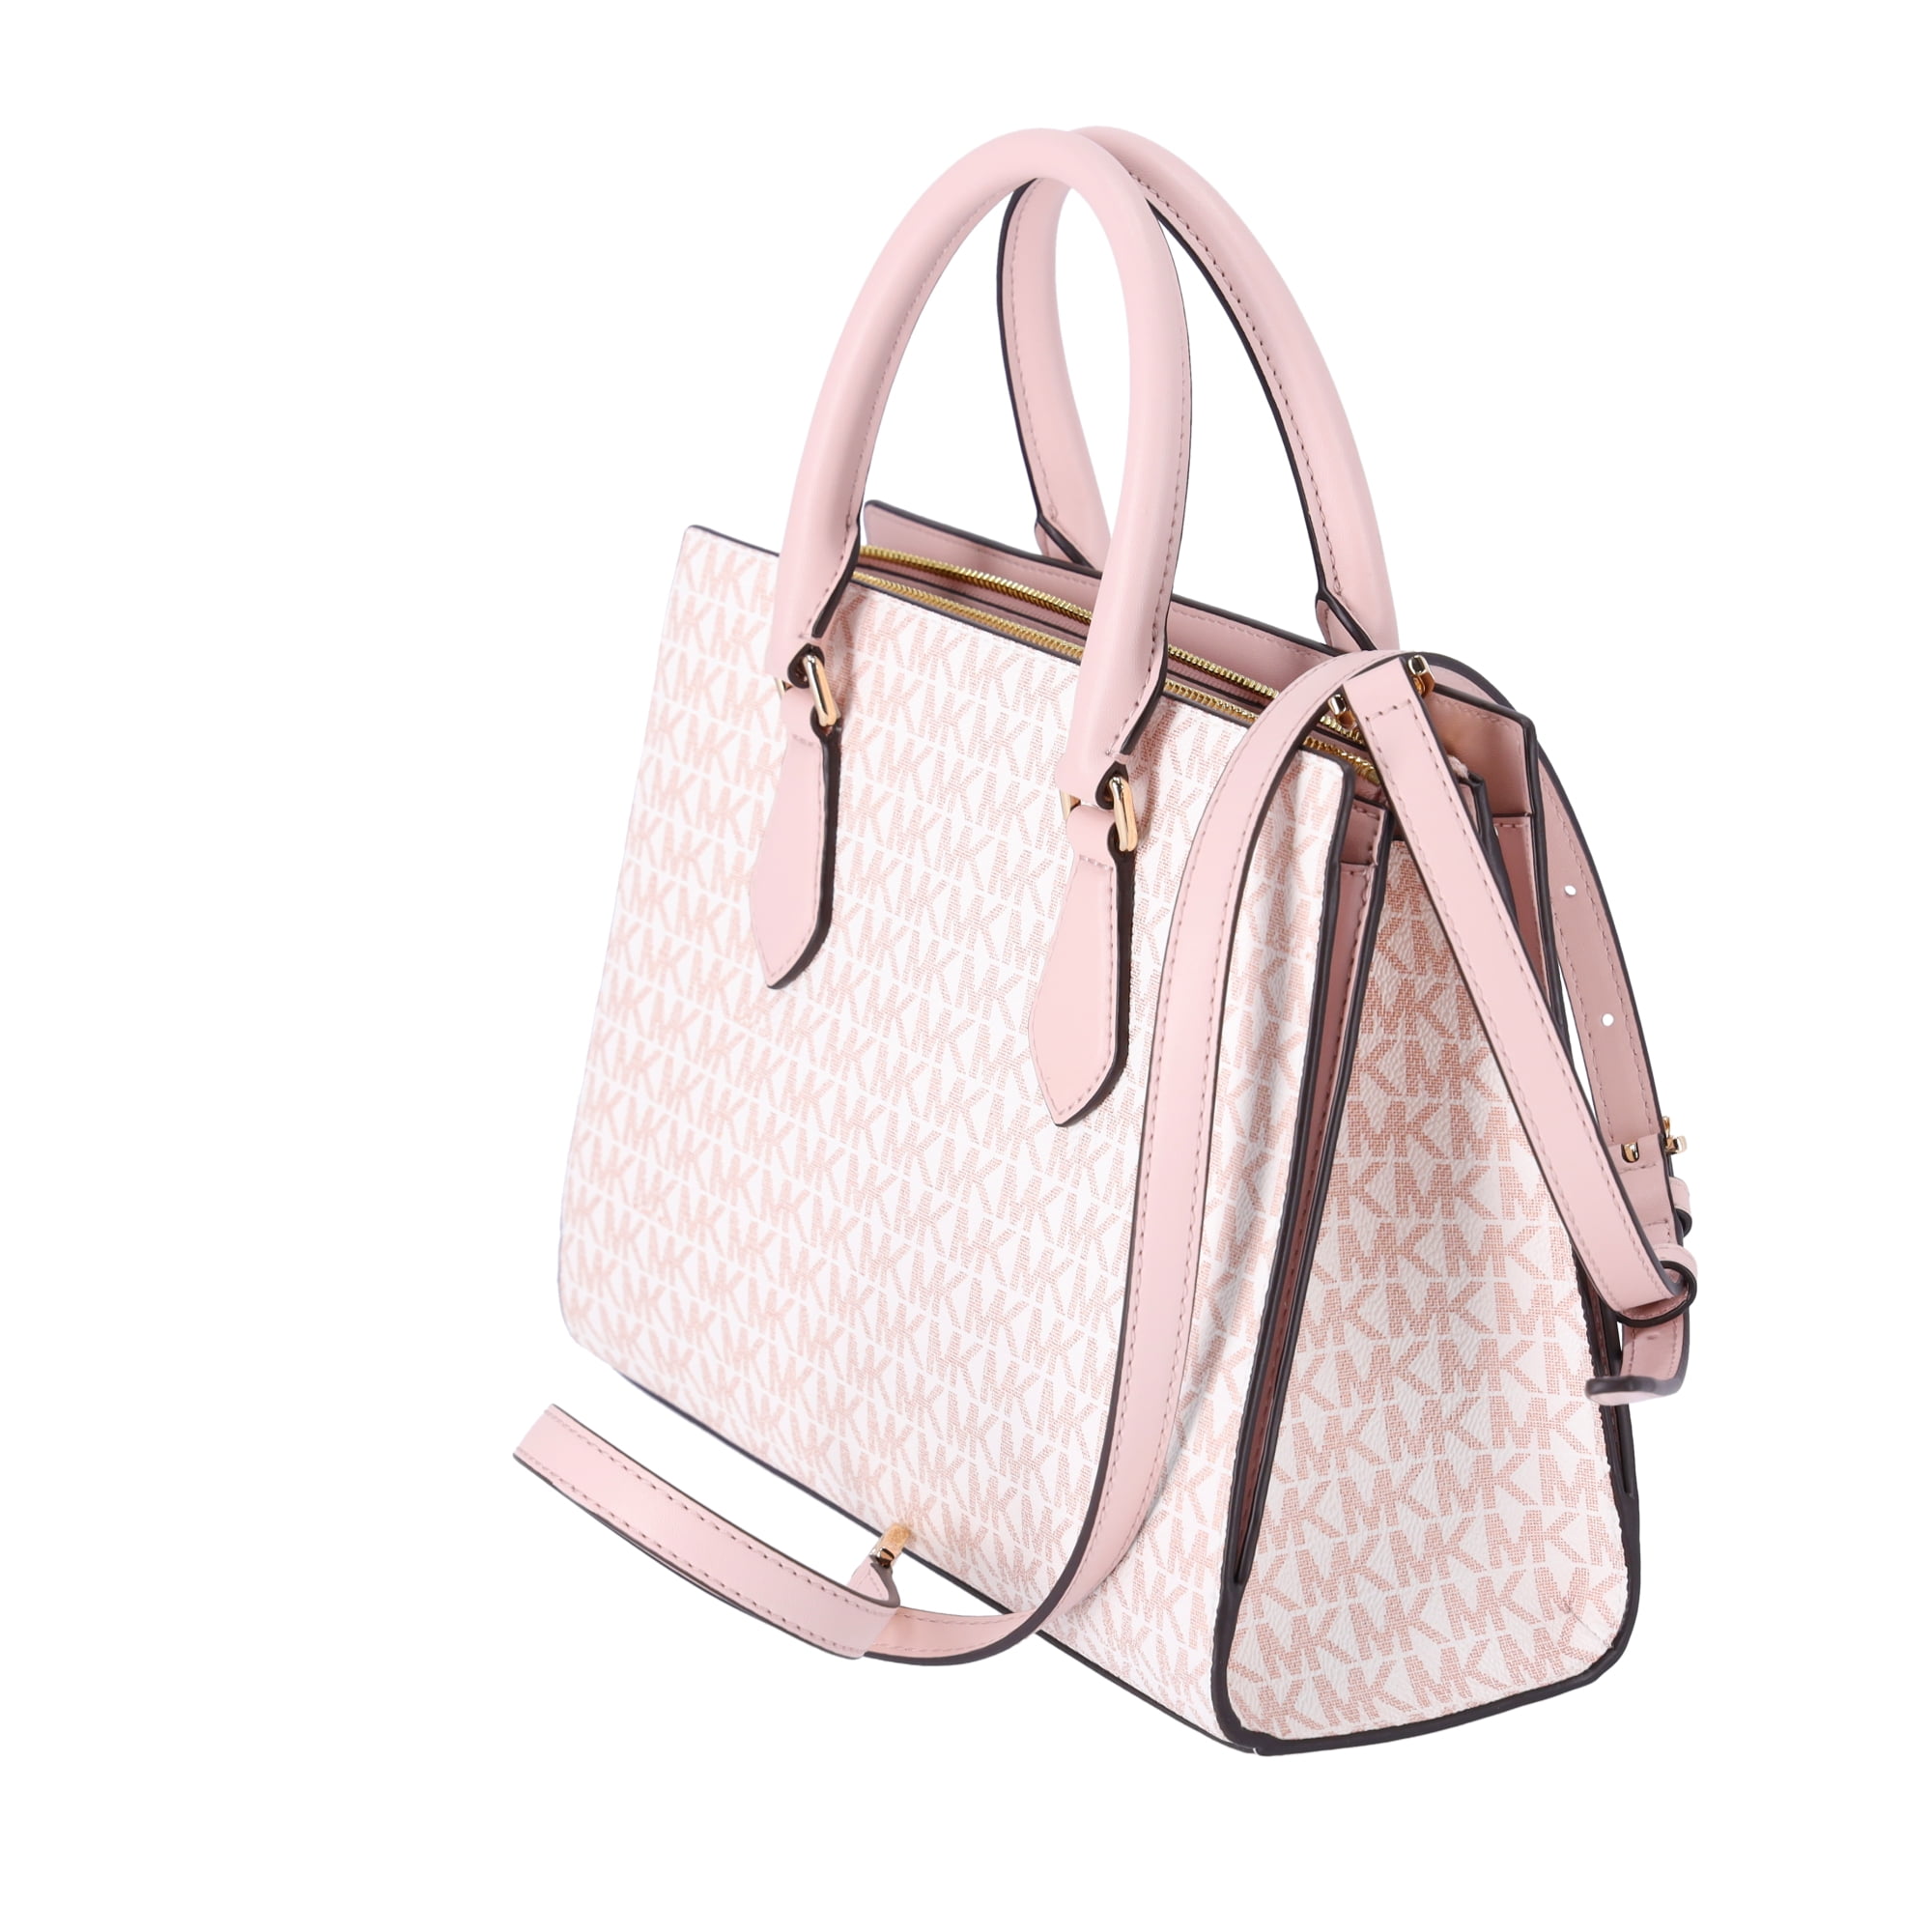 BNWT Michael Kors MK Mercer Purse & Dust Bag - Blush Pink / Rose Gold  Hardware | Blush handbag, Rose gold hardware, Gorgeous bags